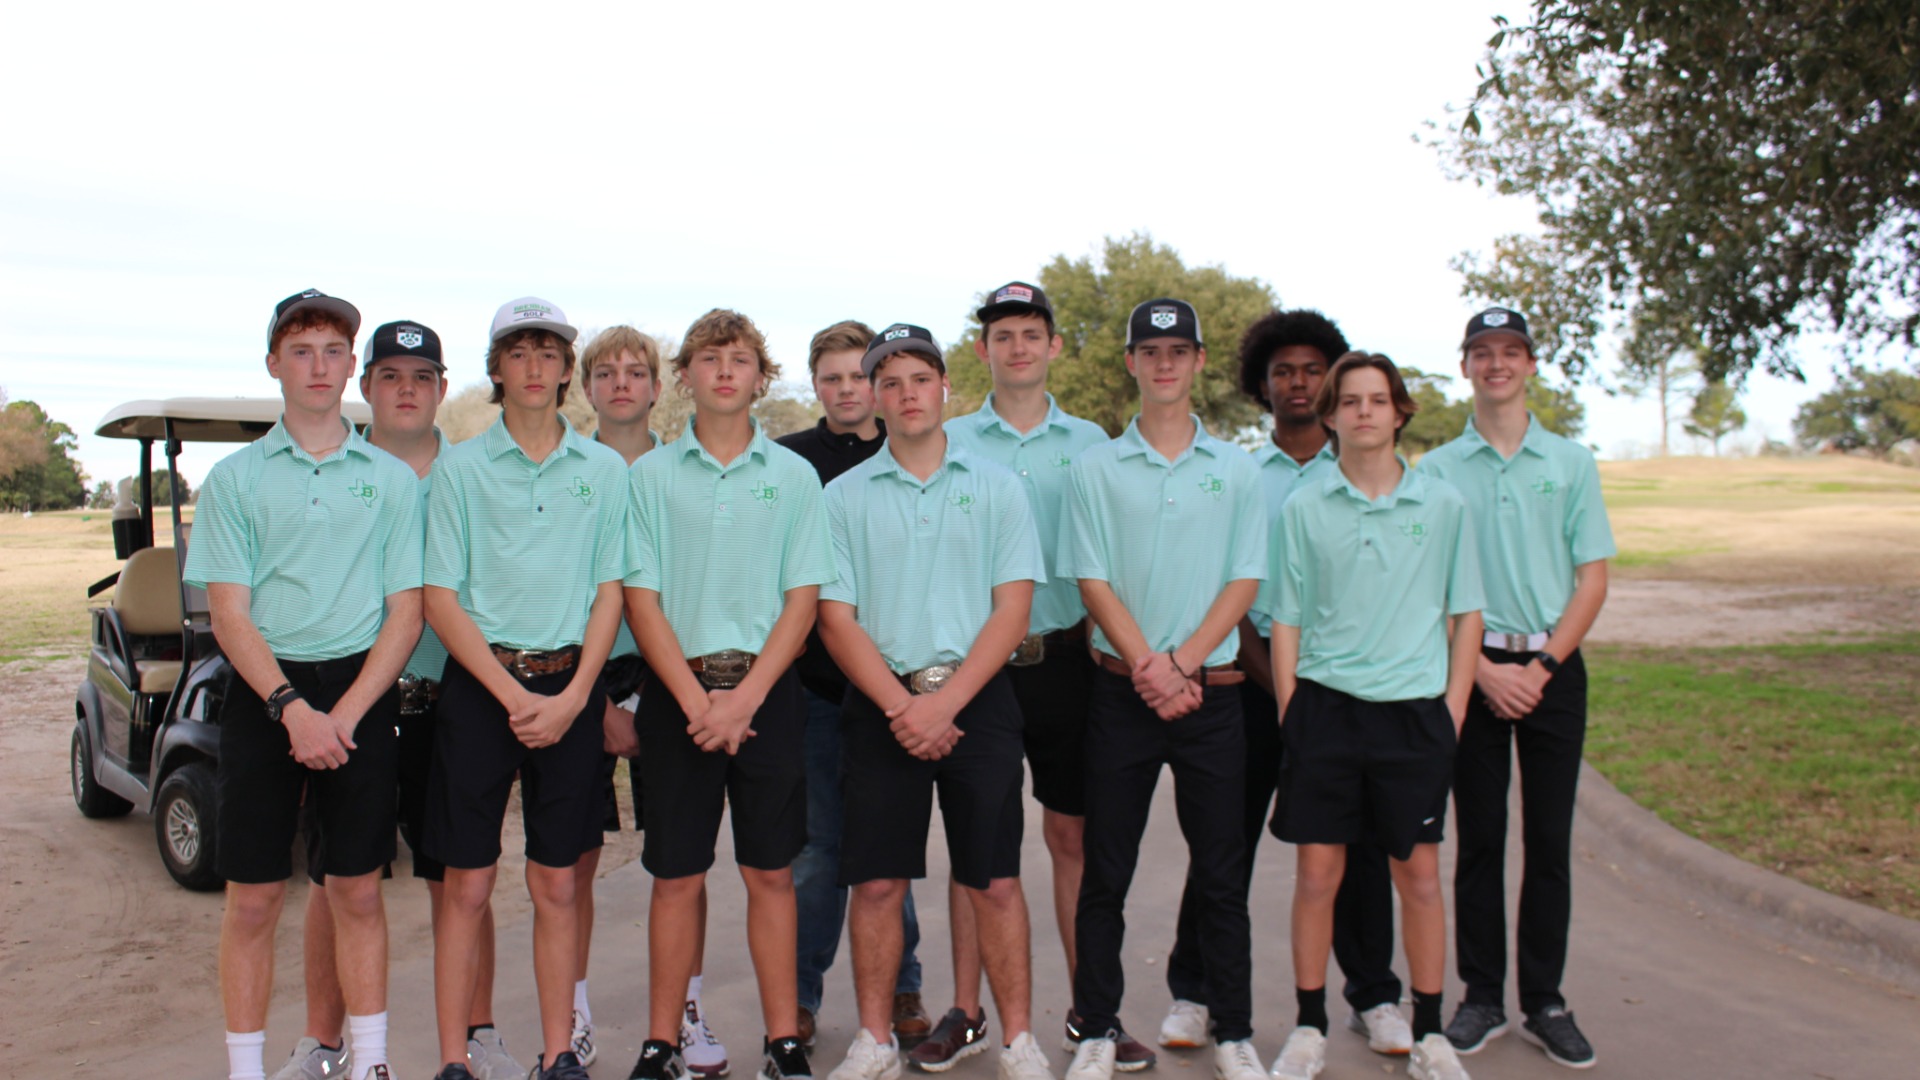 Slide 7 - Boys Golf Team